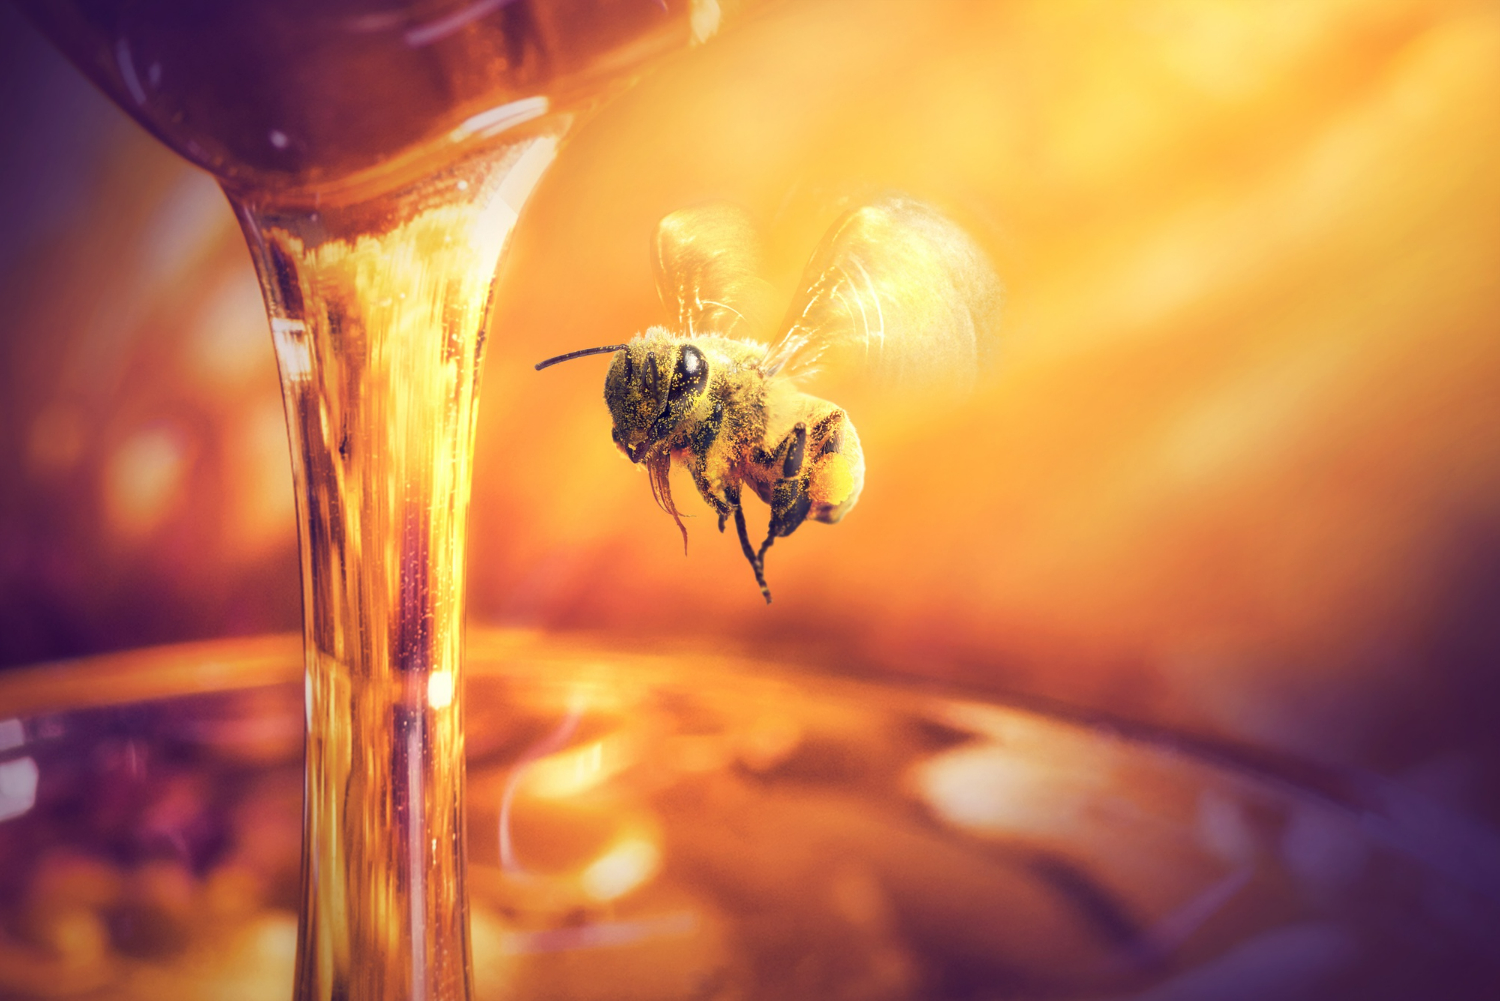 Benefícios do mel para o organismo